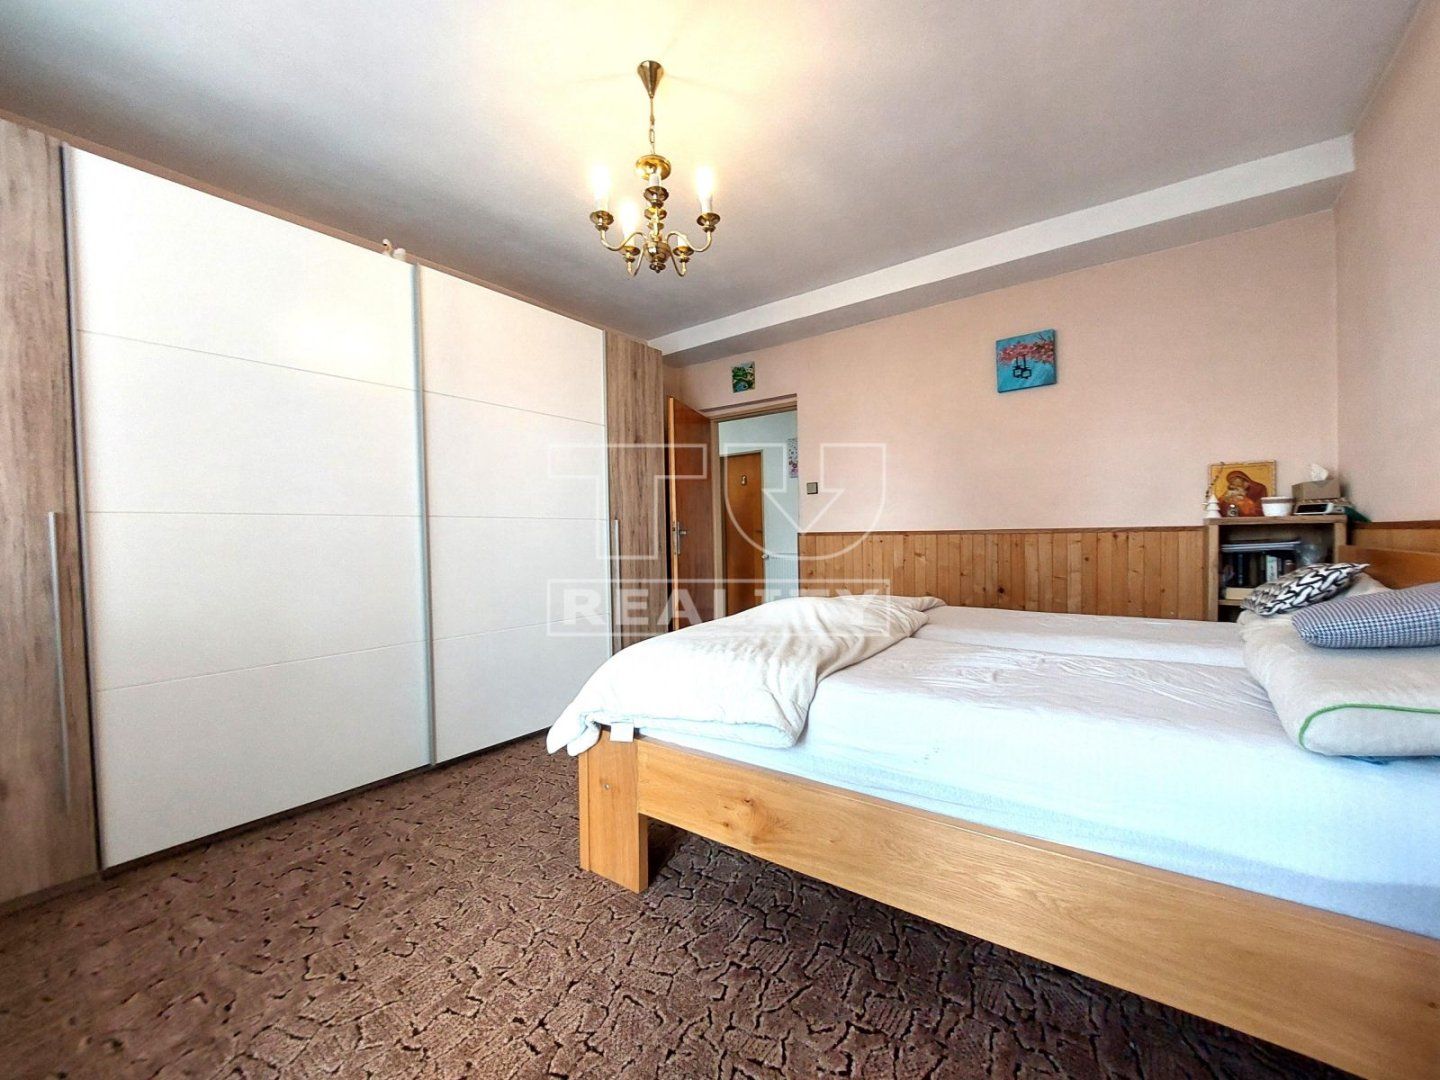 NOVÁ CENA!!!
Na predaj 6 izbový rodinný dom v príjemnej lokalite Piešťan na peknom pozemku 500 m2